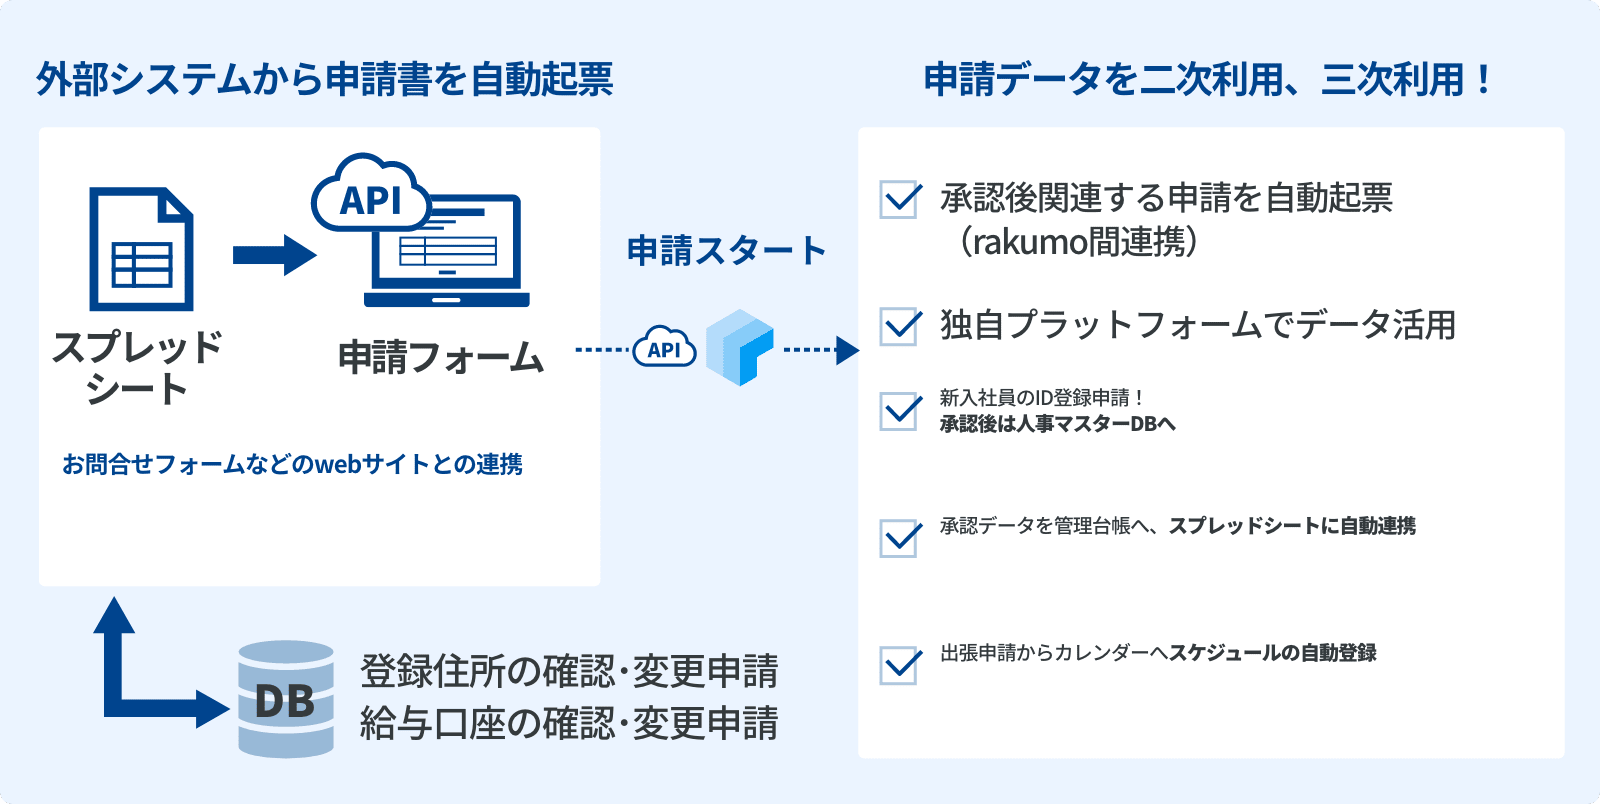 rakumo ワークフロー 他システムとの連携イメージ